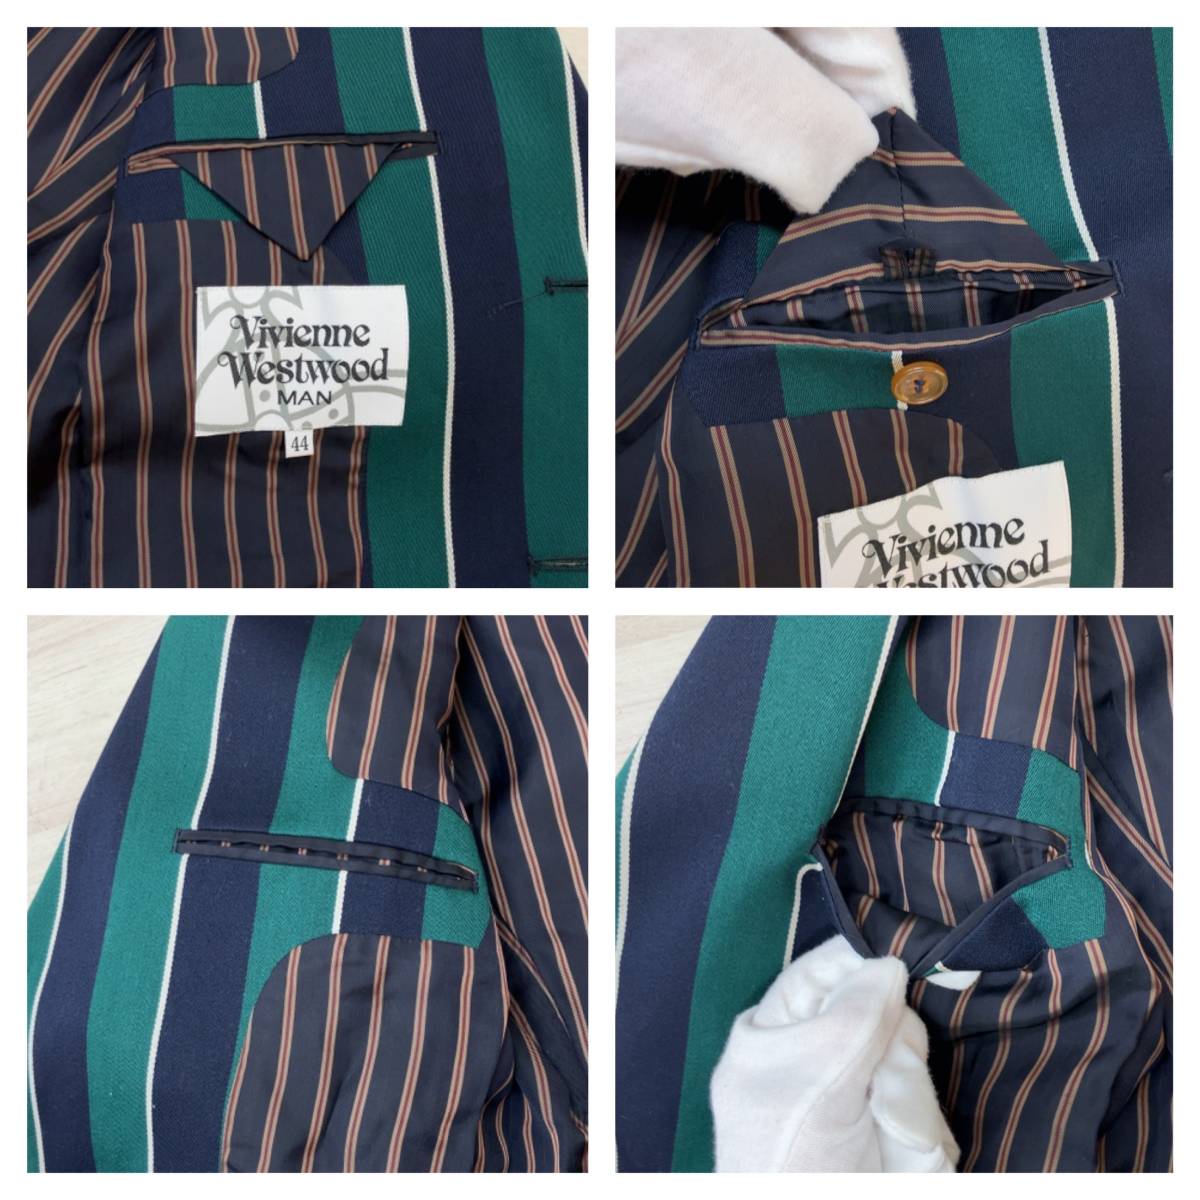 VIVIENNE WESTWOOD ビィビィアン・ウエストウッド テーラードジャケット【サイズ : 44】グリーン×ネイビー ストライプ オーブ刺繍 日本製_内側ポケット(上段: 左側、下段:右側)